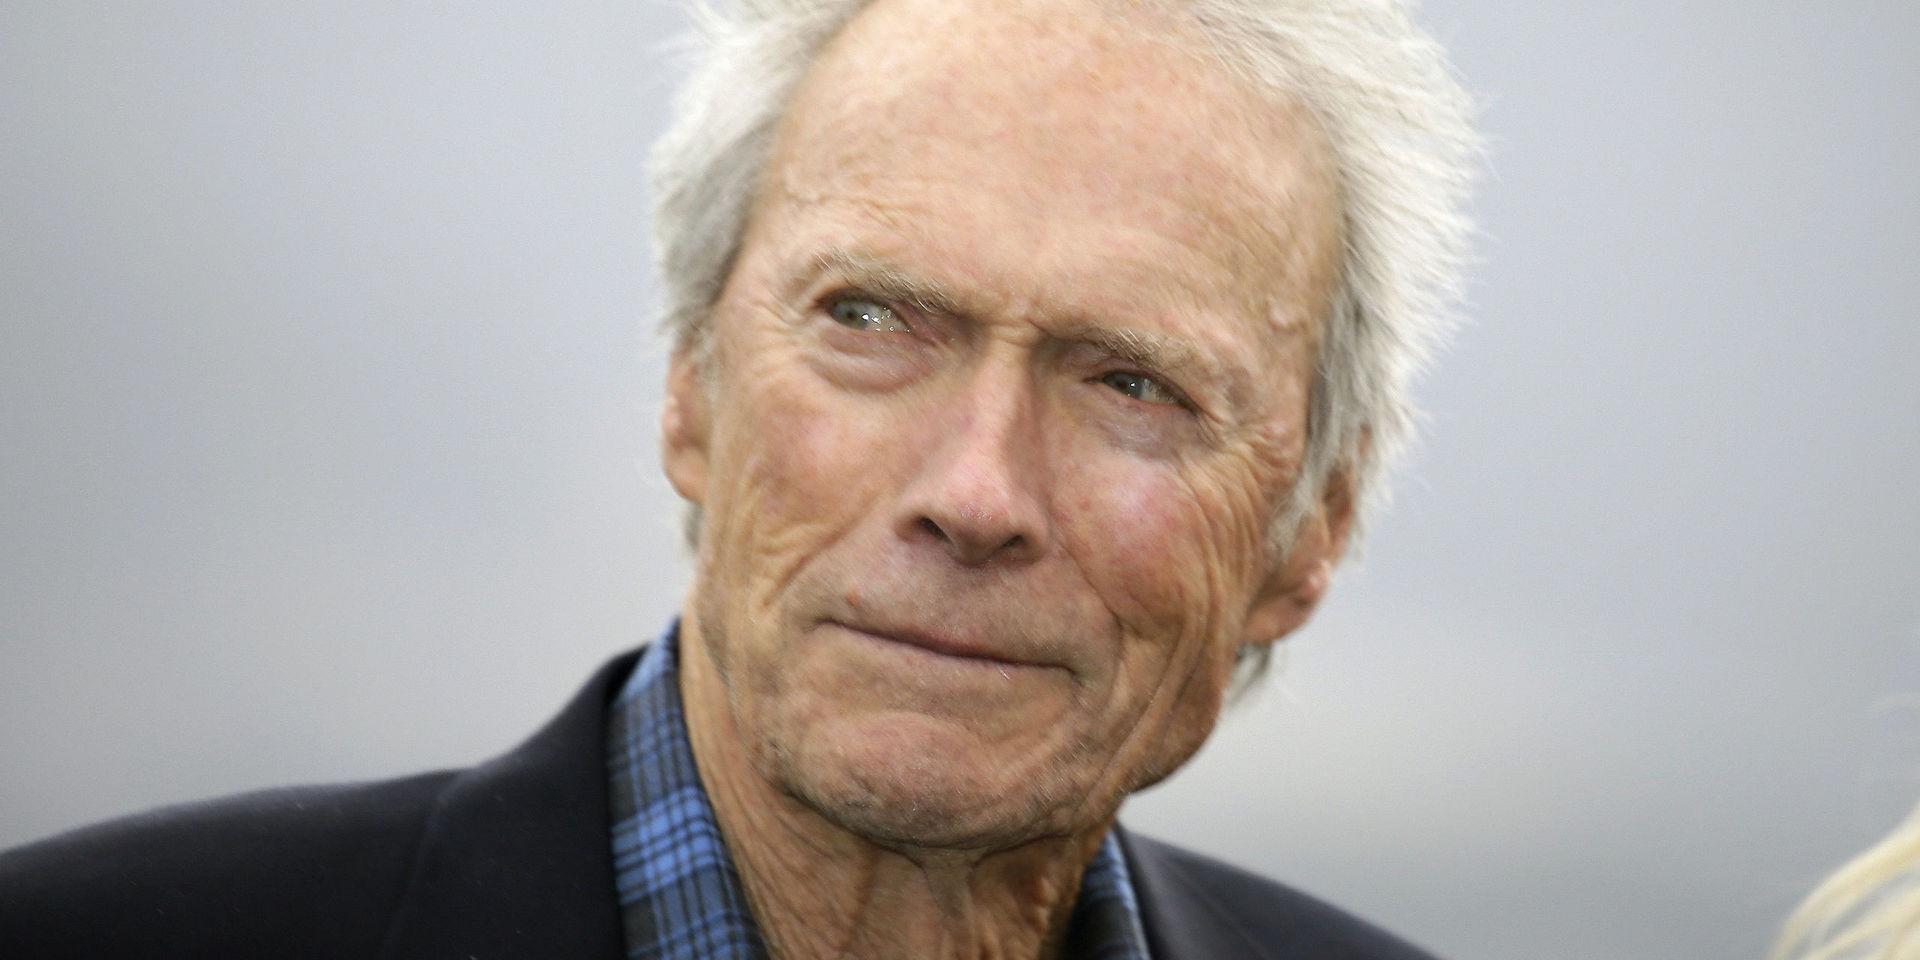 Uppvaktning undanbedes. Clint Eastwood fyller 90 år men vill helst vara i fred och jobba – om man ska tro hans barn. Arkivbild. 